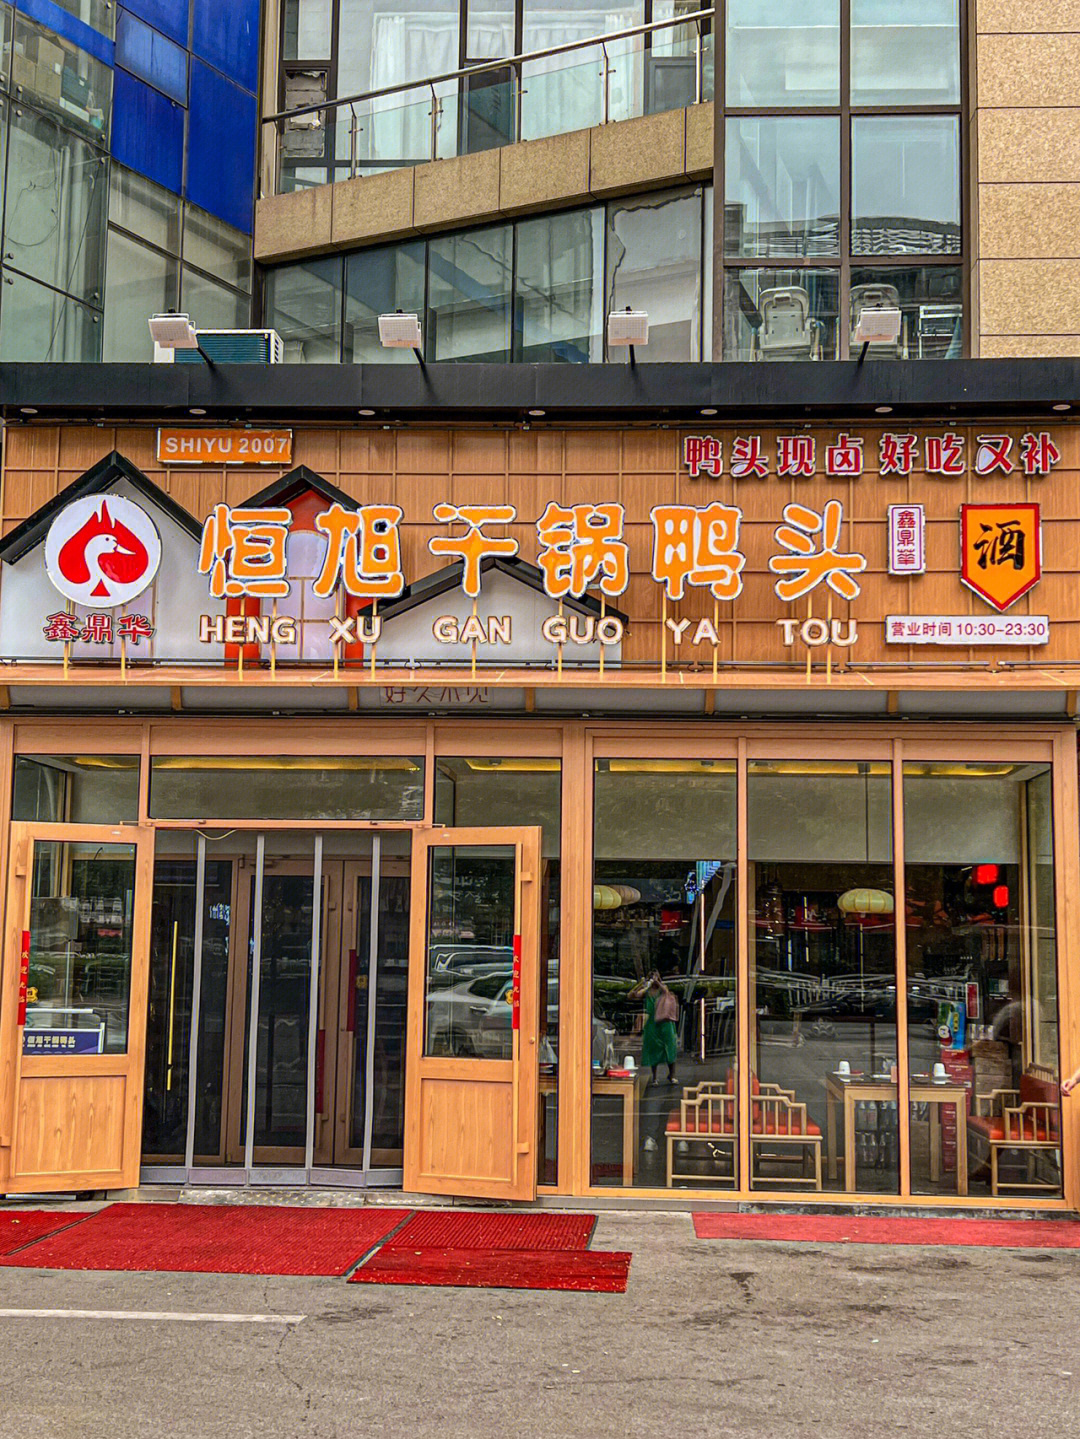 报告青岛超超超好吃的干锅鸭头店找到了